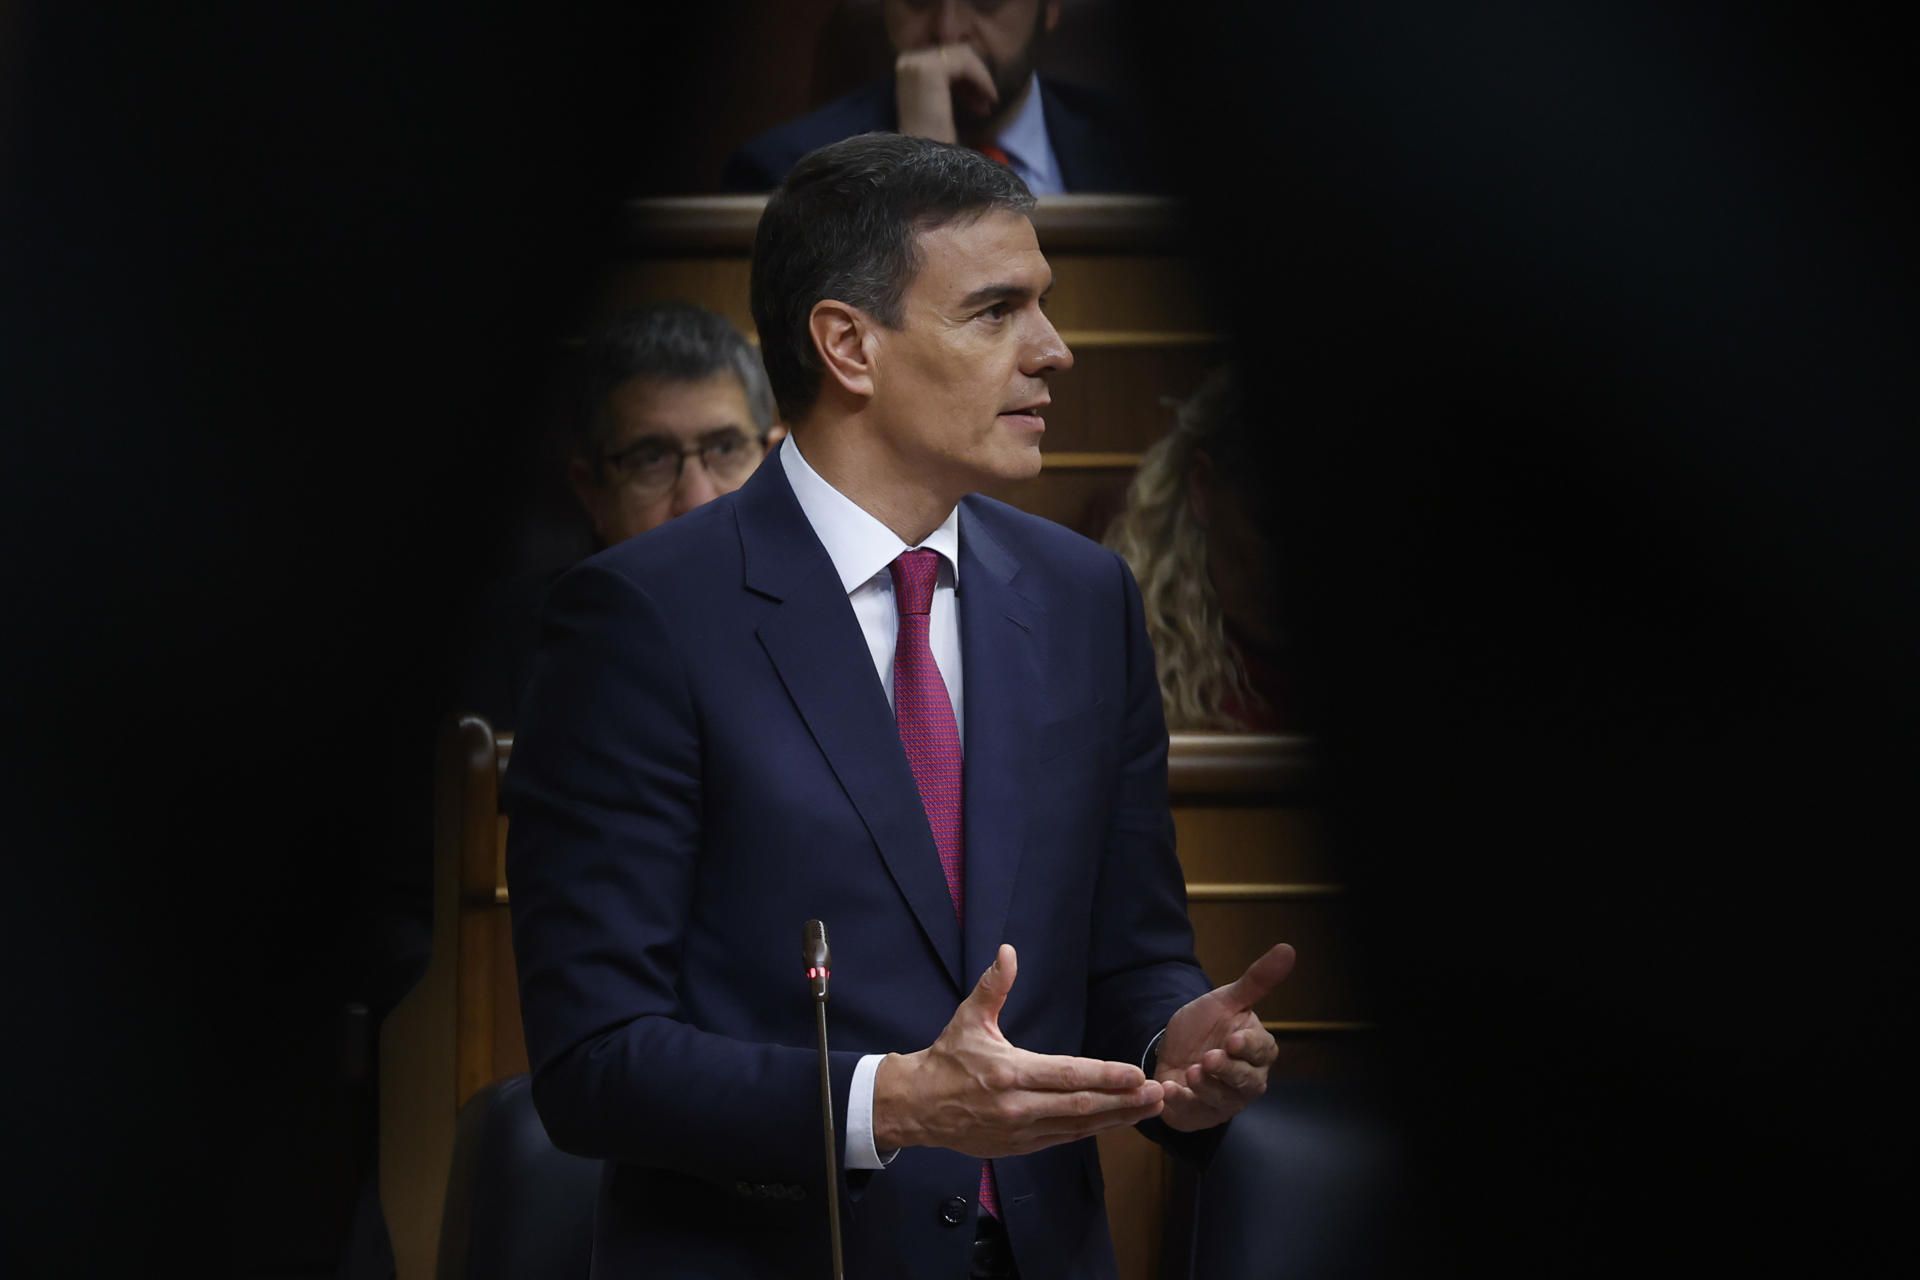 La amnistía pasa factura al PSOE mientras el PP se acerca a la Moncloa, según una encuesta